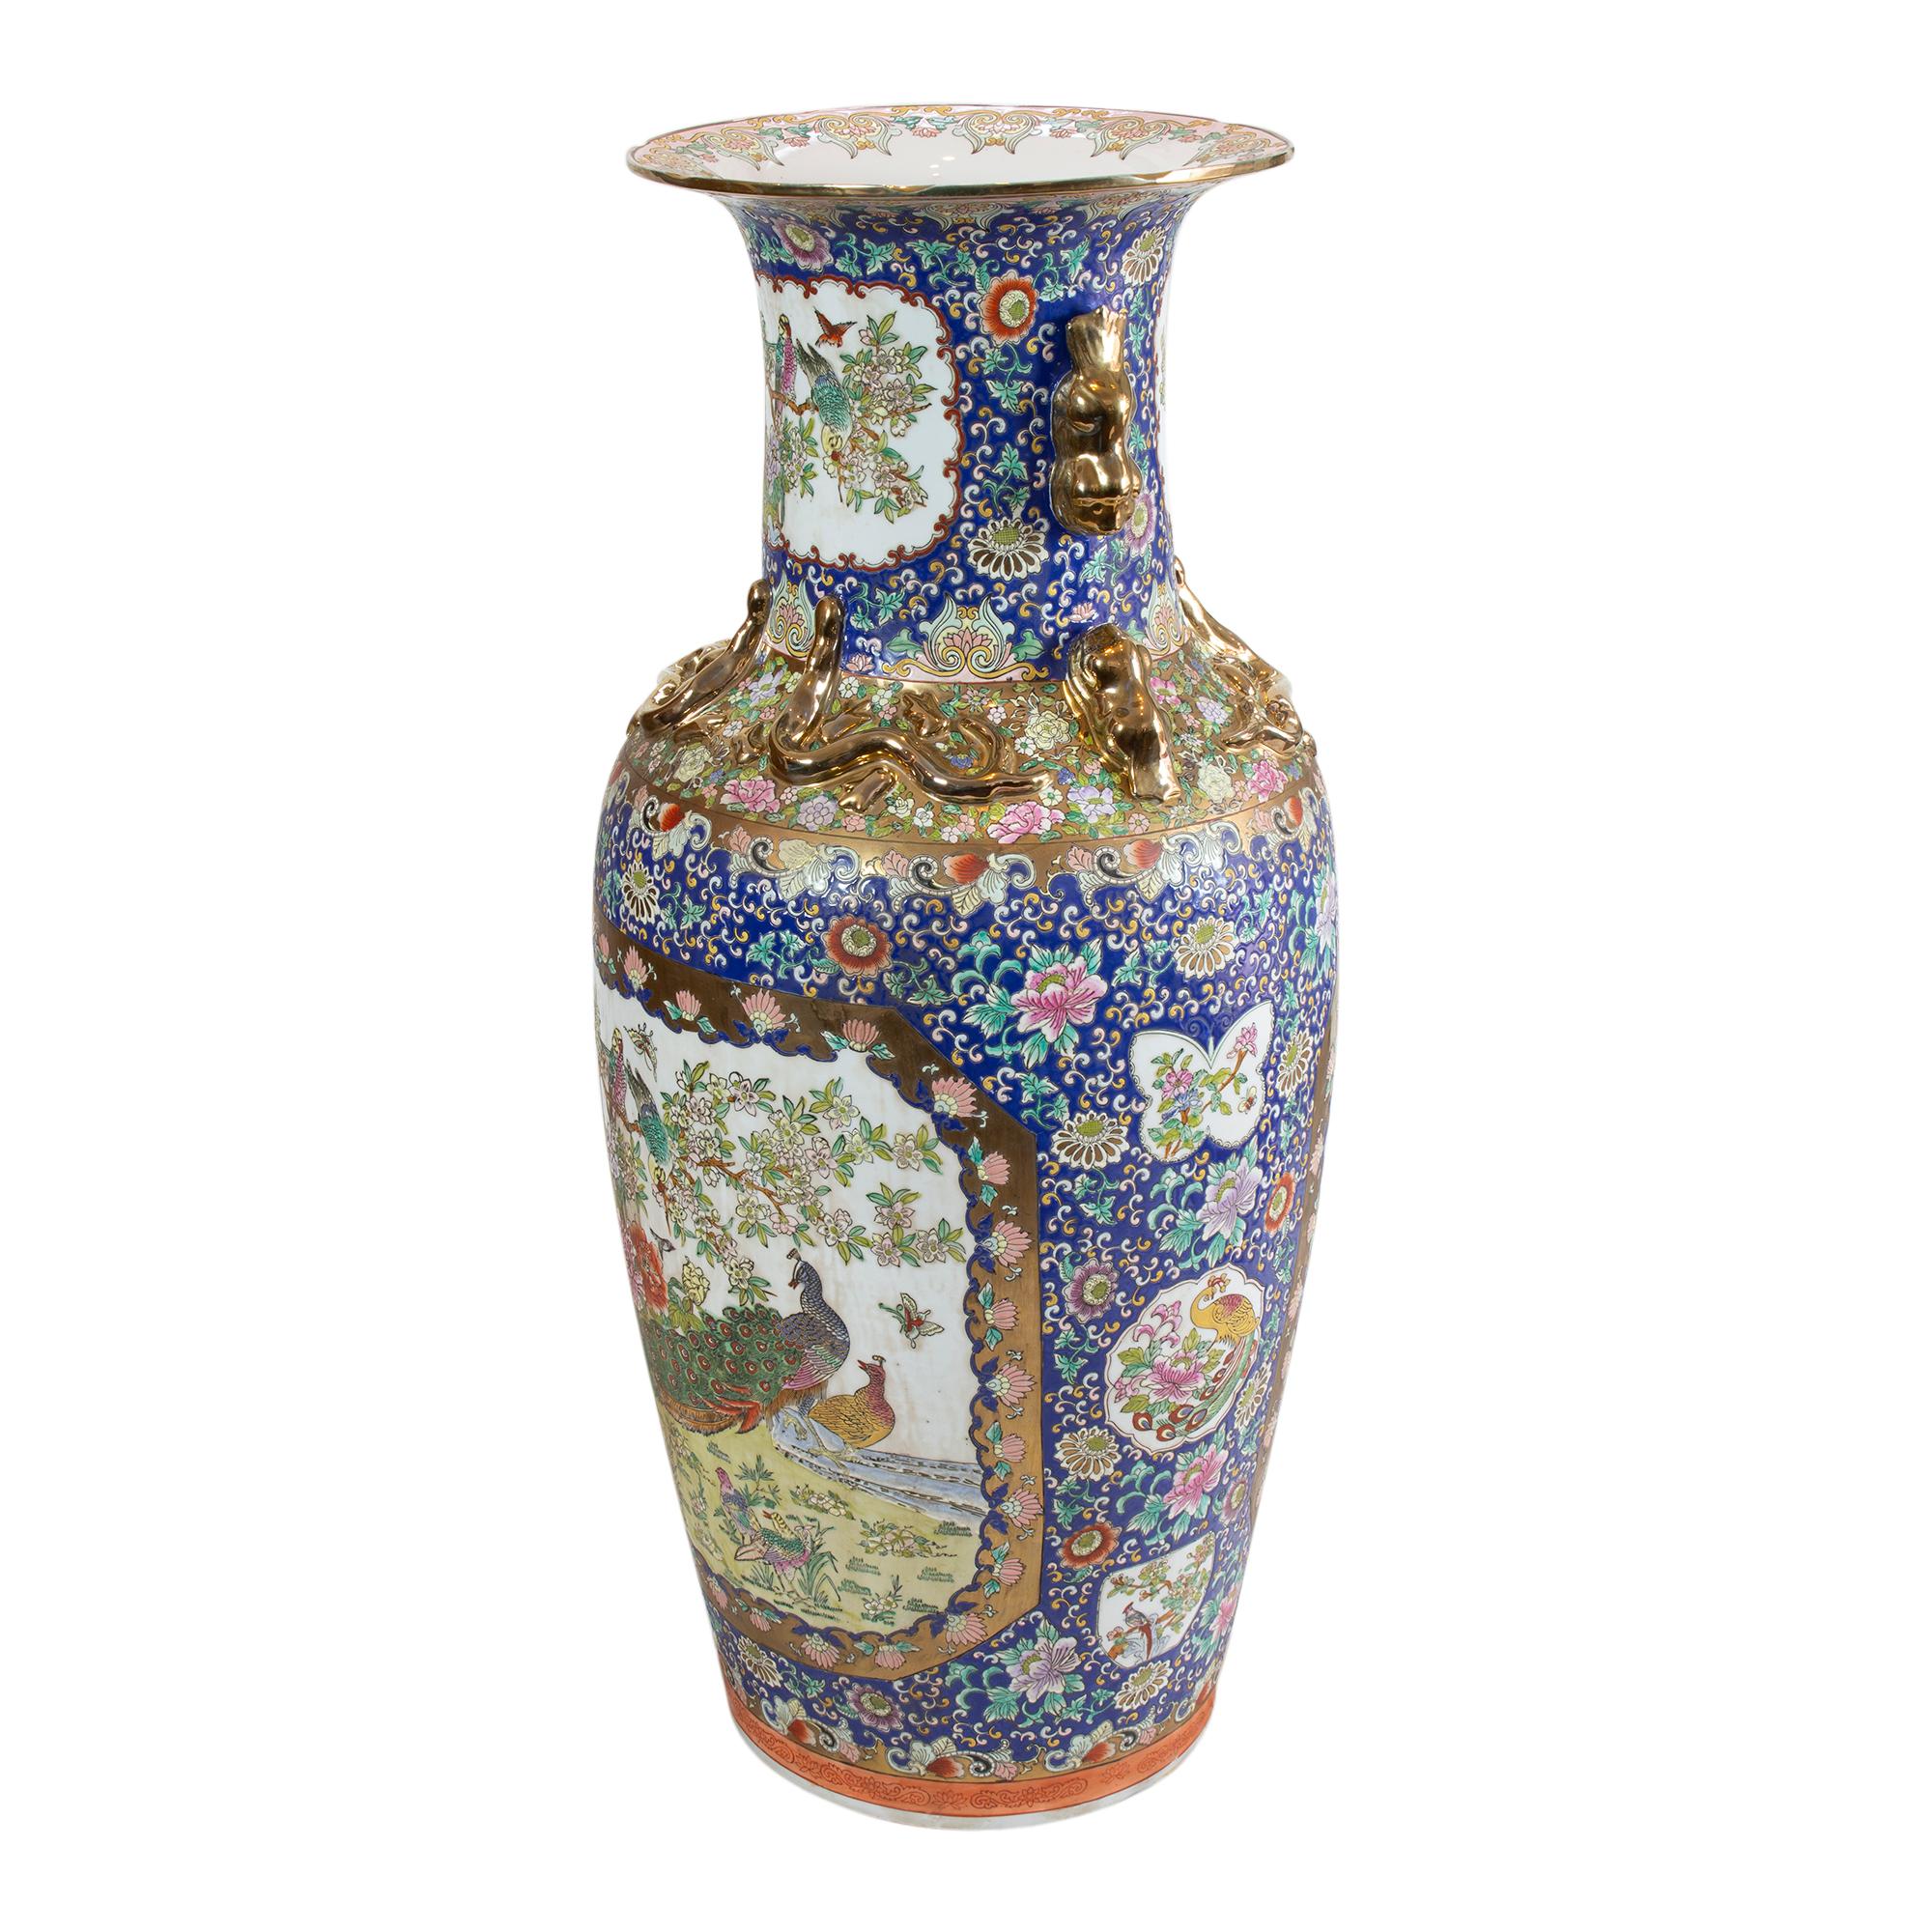 Diese sehr großen, exquisit verzierten antiken chinesischen Bodenvasen sind beeindruckend. Die Höhe beträgt 108 cm! Die Vasen haben eine rote Markierung auf der Unterseite, die auf die Tongzhi-Ära hinweist. Diese Periode wird mit der späten